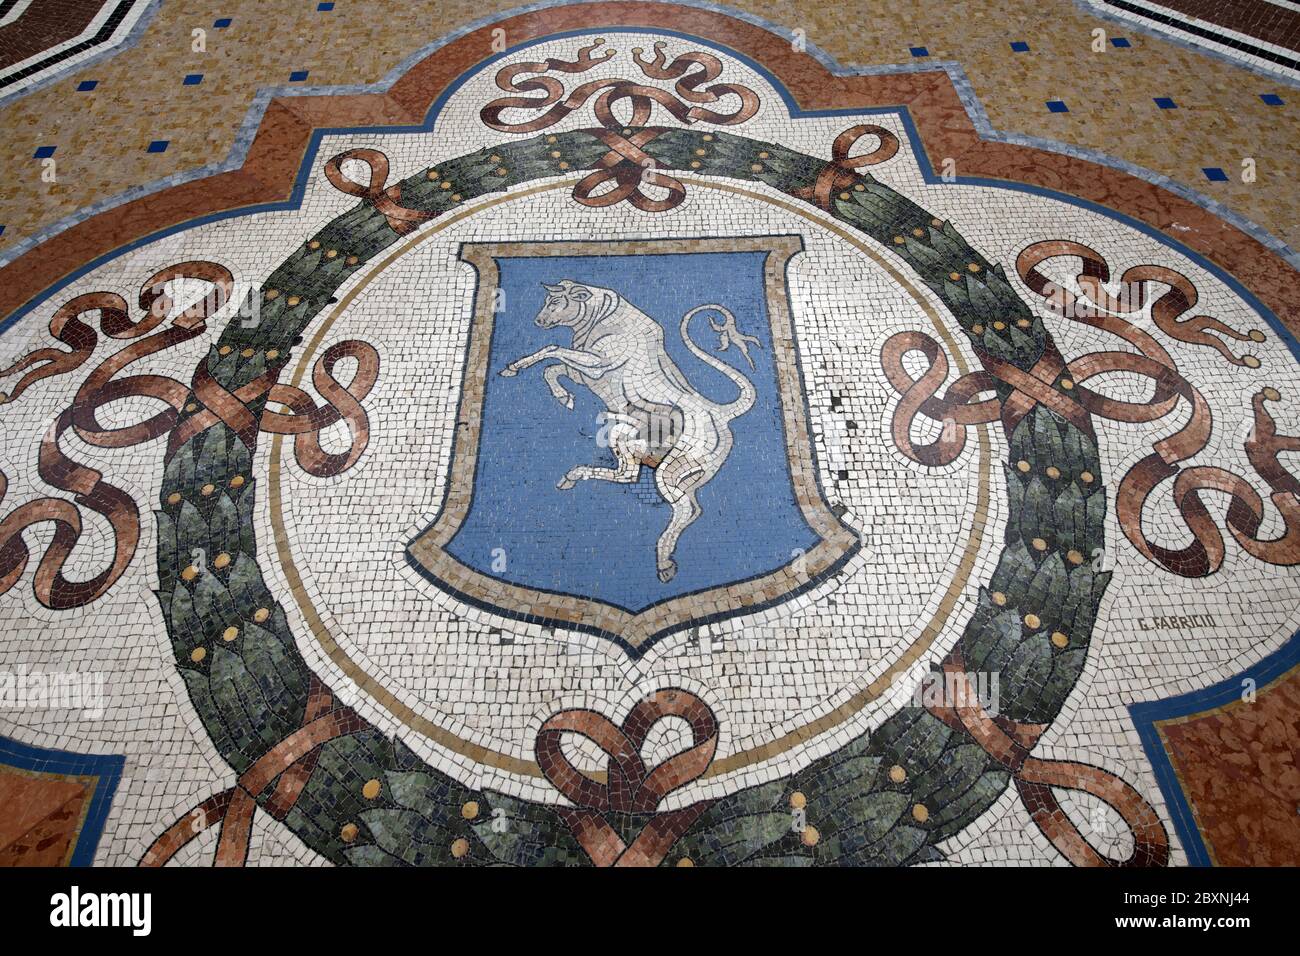 Der Bodenmosaik-Stier der Galleria Vittorio Emanuele in Mailand, Italien. Stockfoto